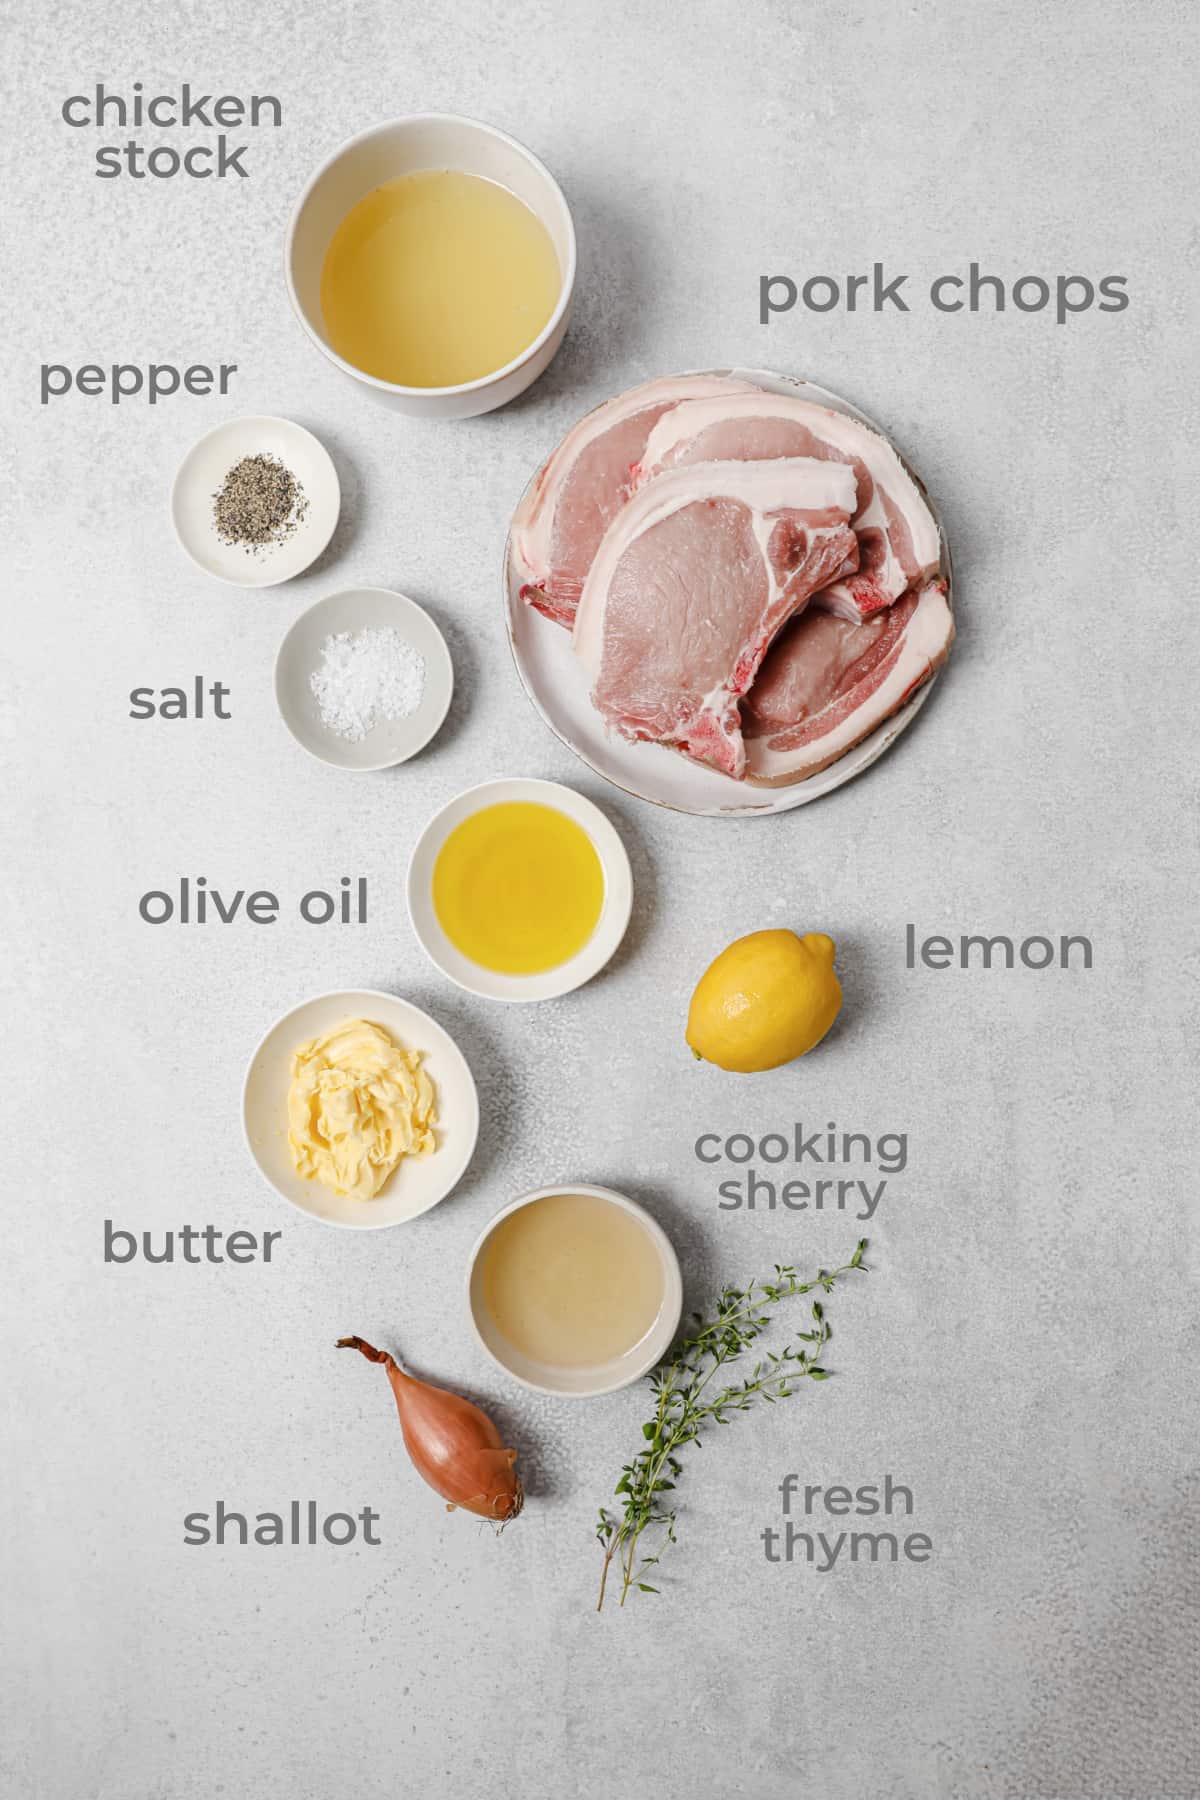 ingredients to make lemon thyme pork chops - pork, lemon, thyme, butter, chicken stock, shallot